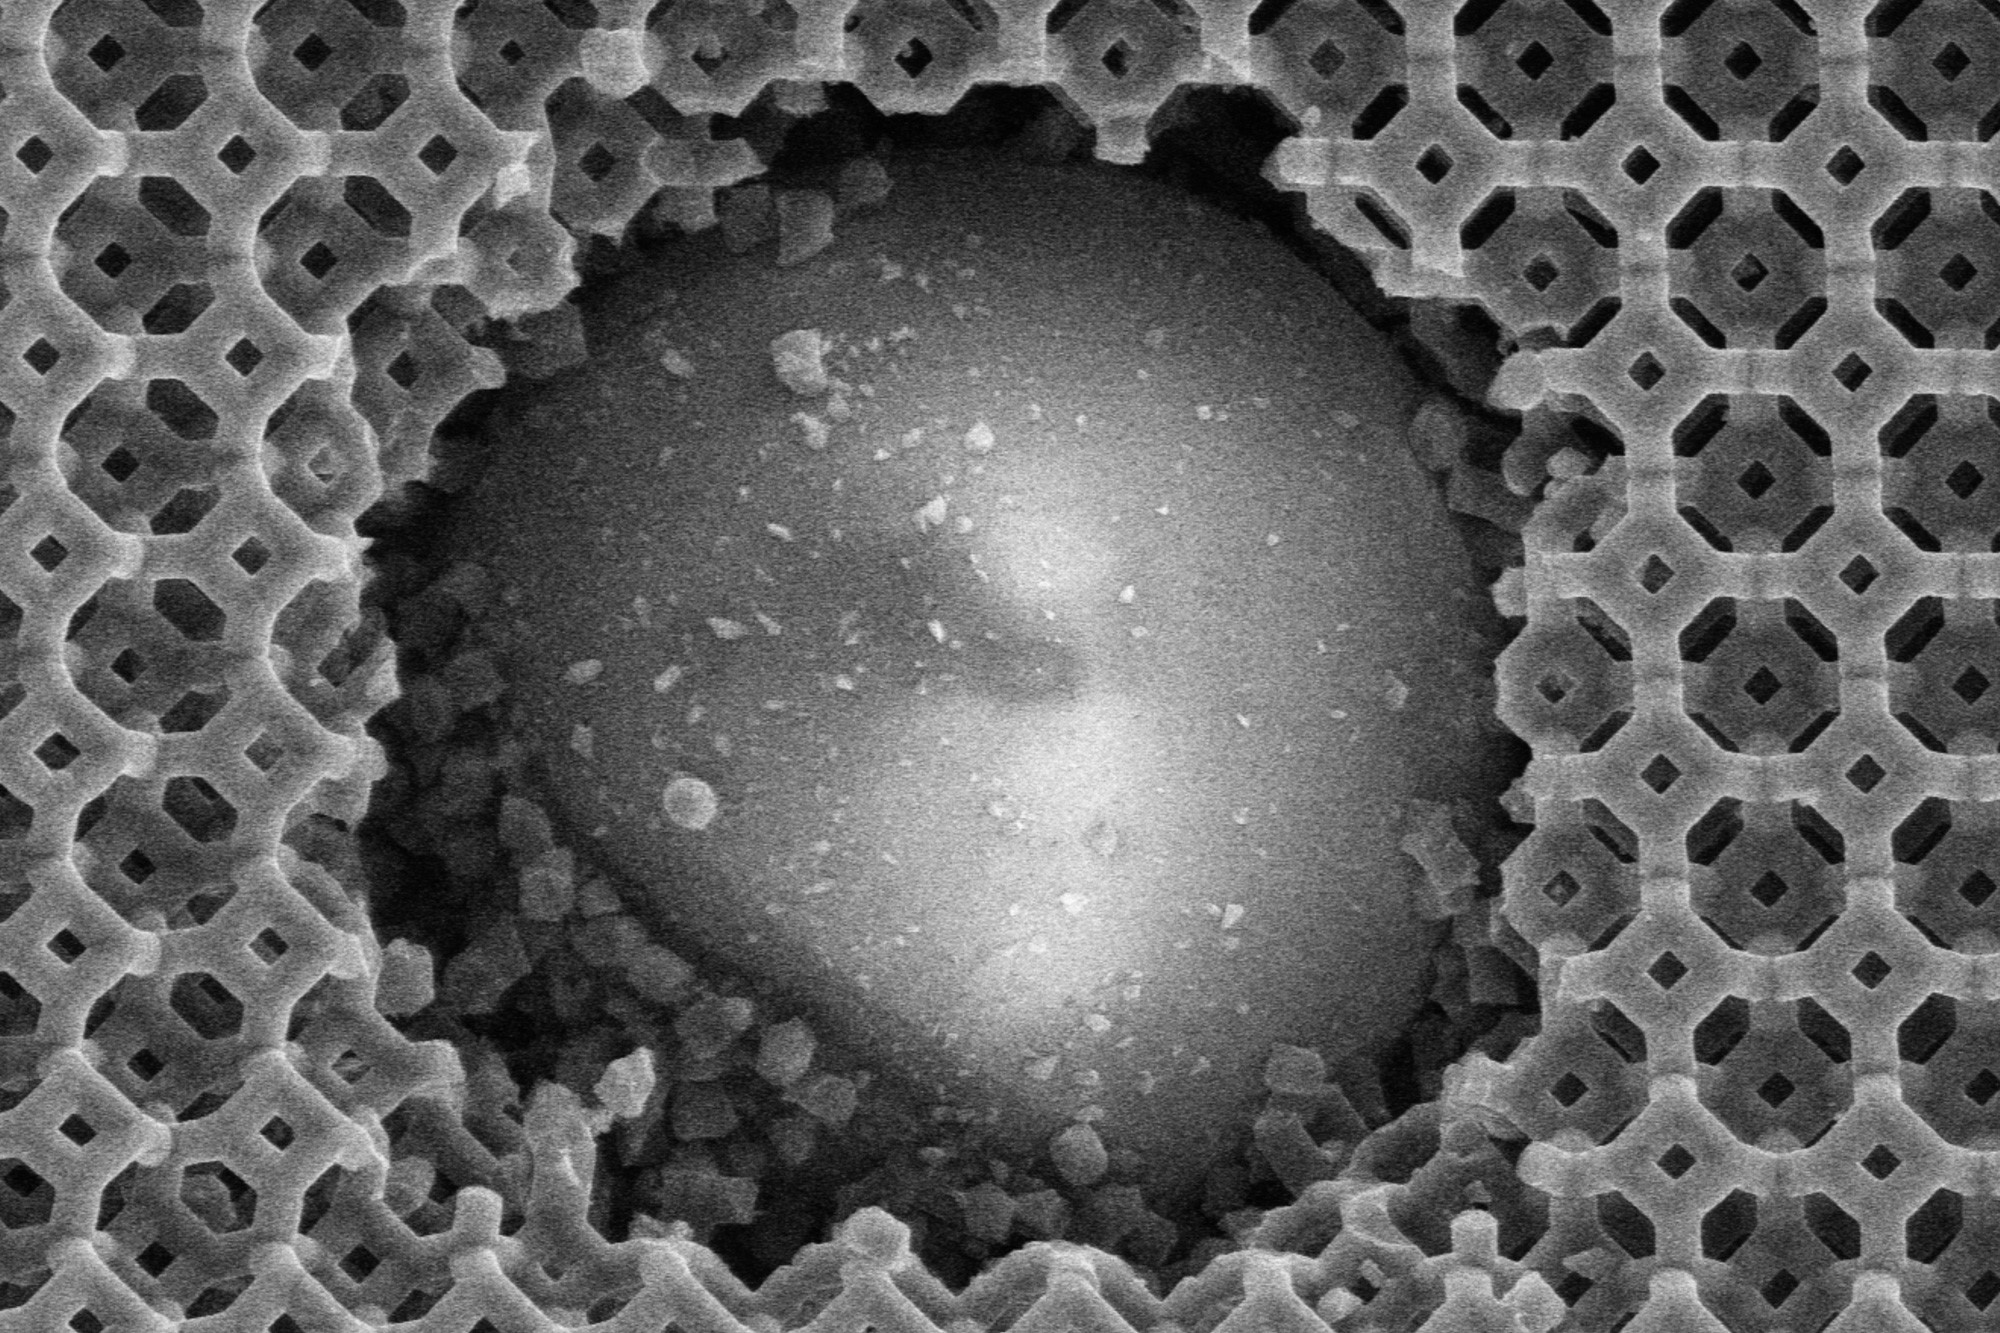 Nanotubes make Kevlar armour smarter, Research